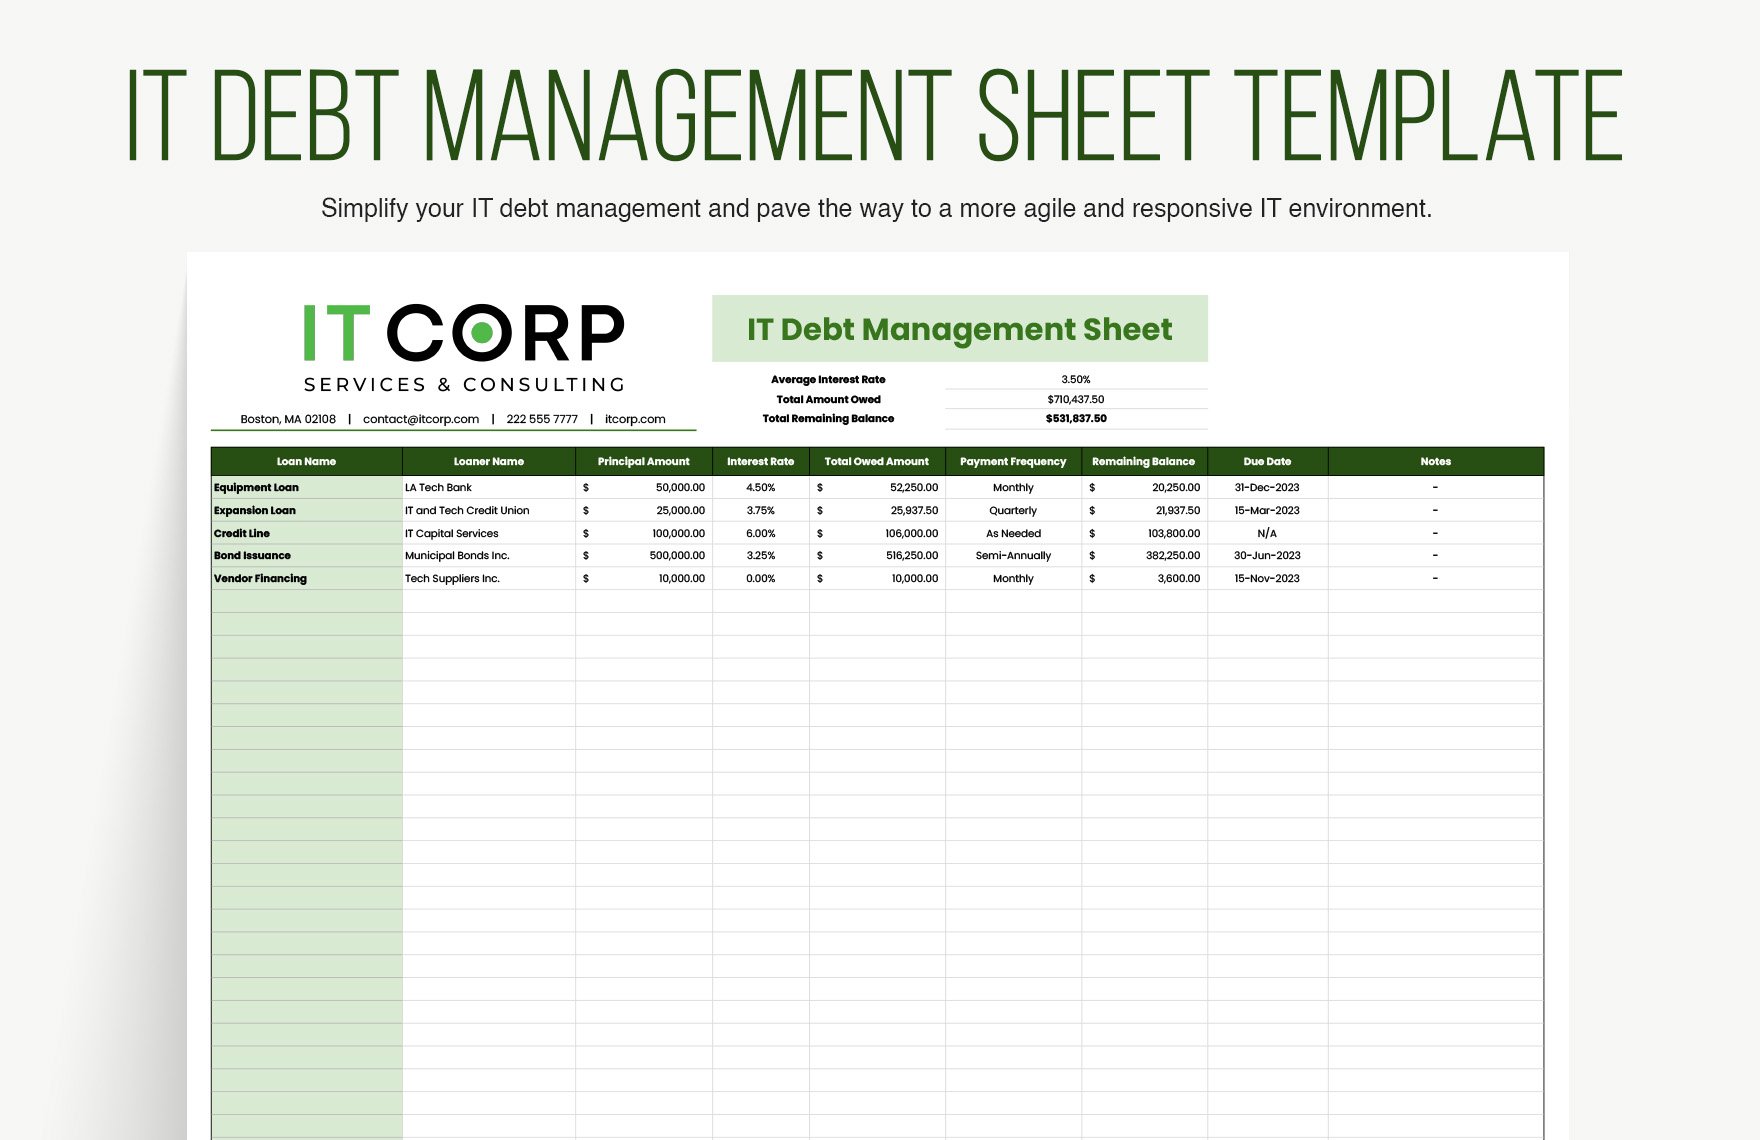 IT Debt Management Sheet Template